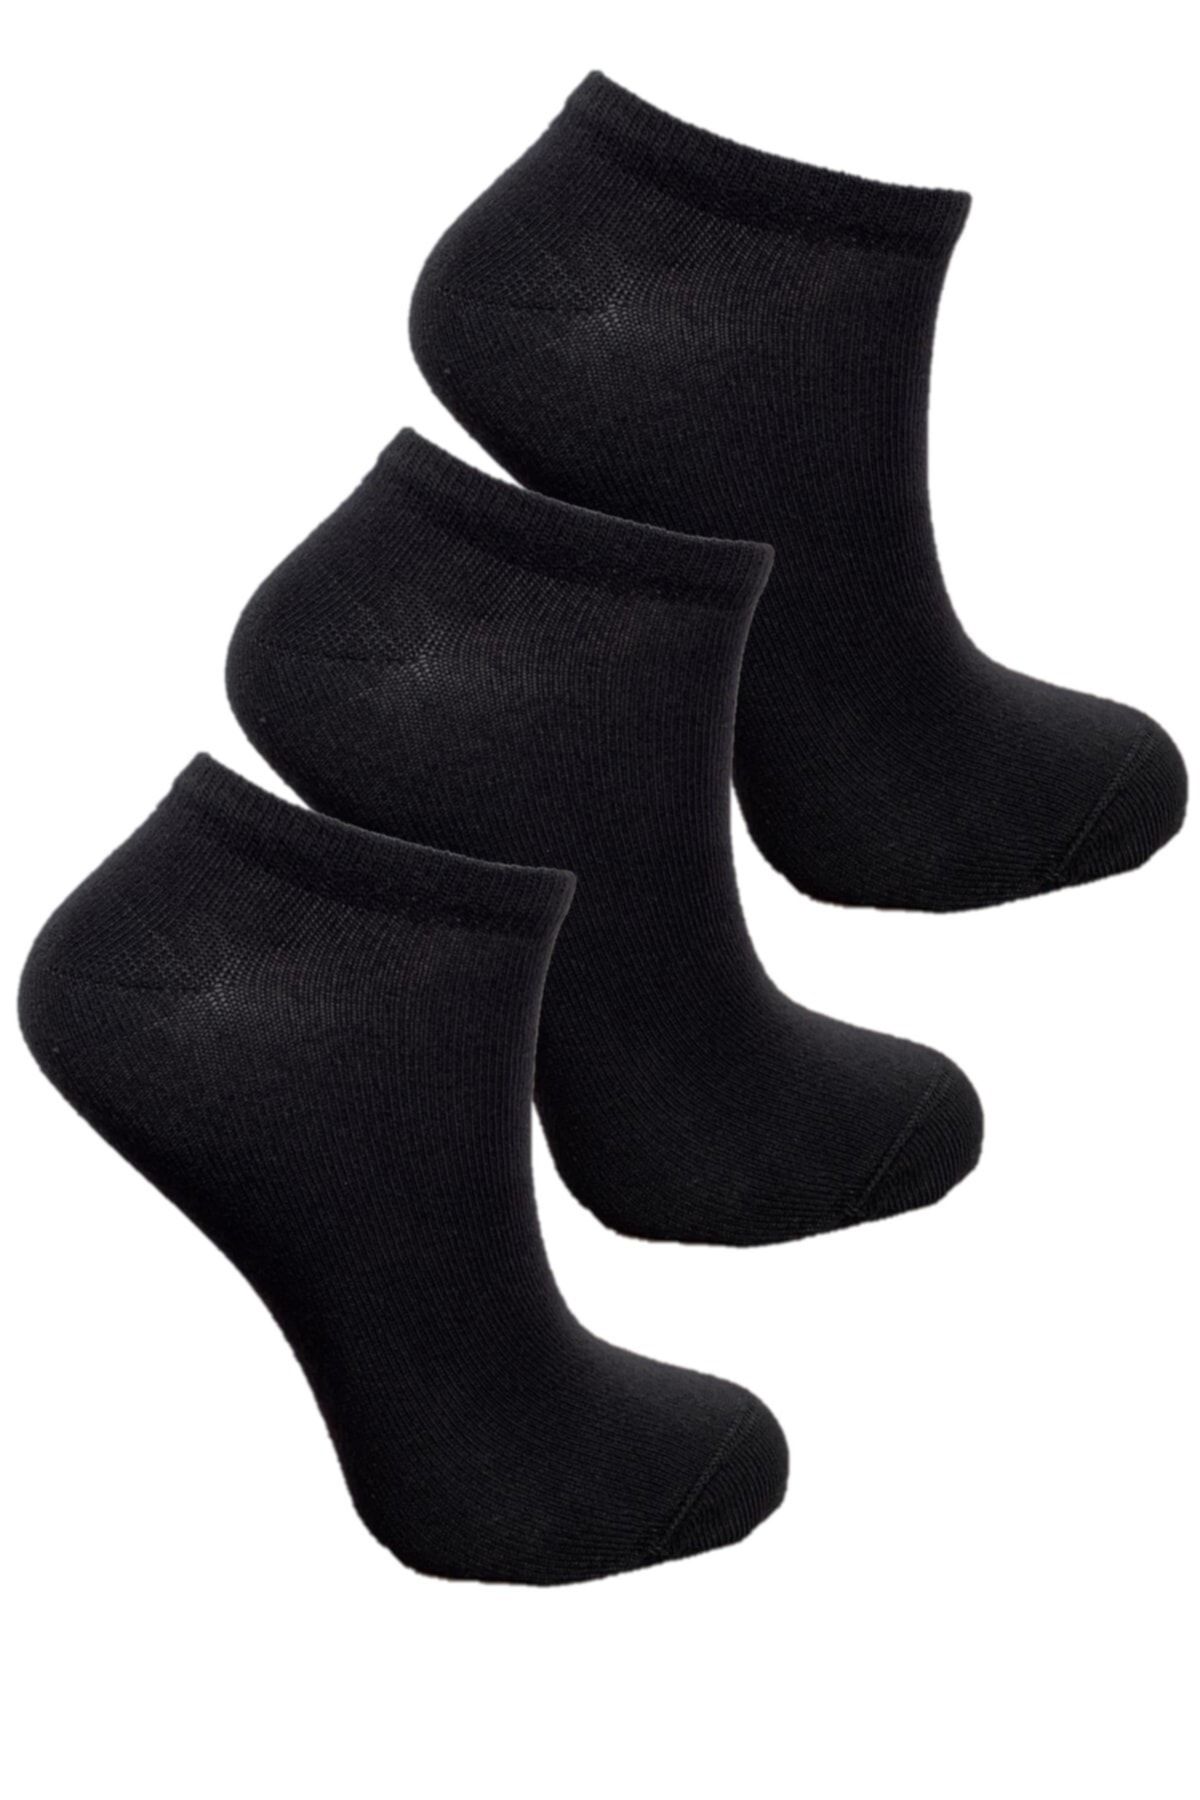 Doğanay 3'lü Çocuk Patik Çorap Siyah Renk Dikişsiz